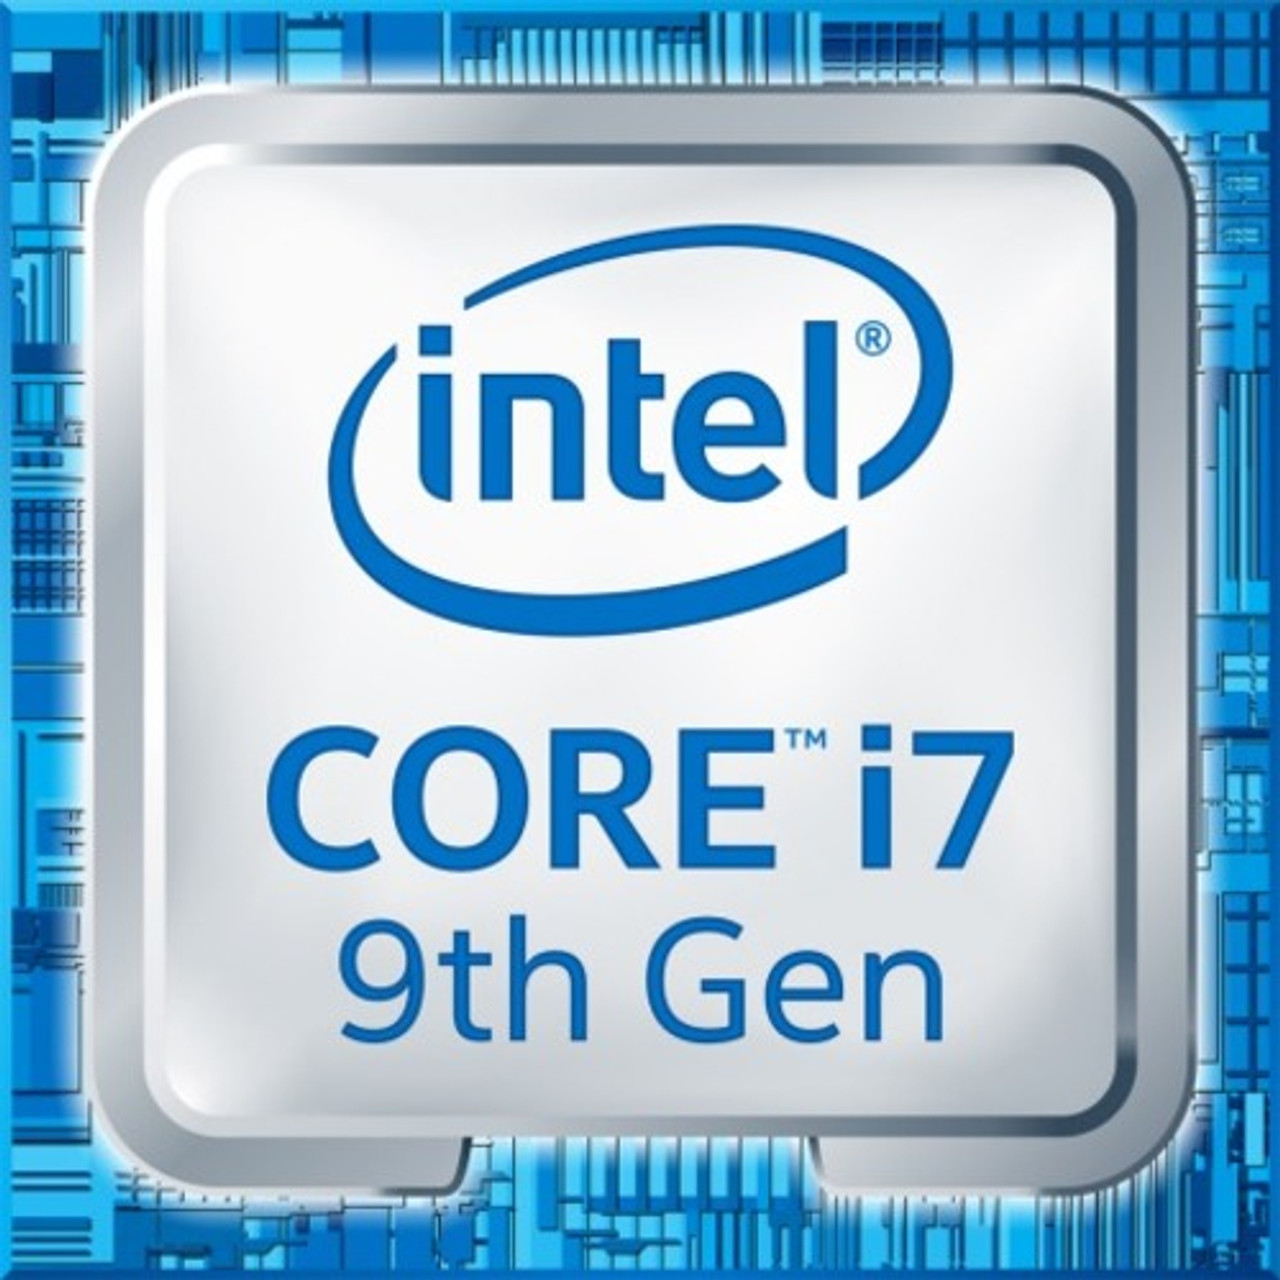 Intel CM8068403874212